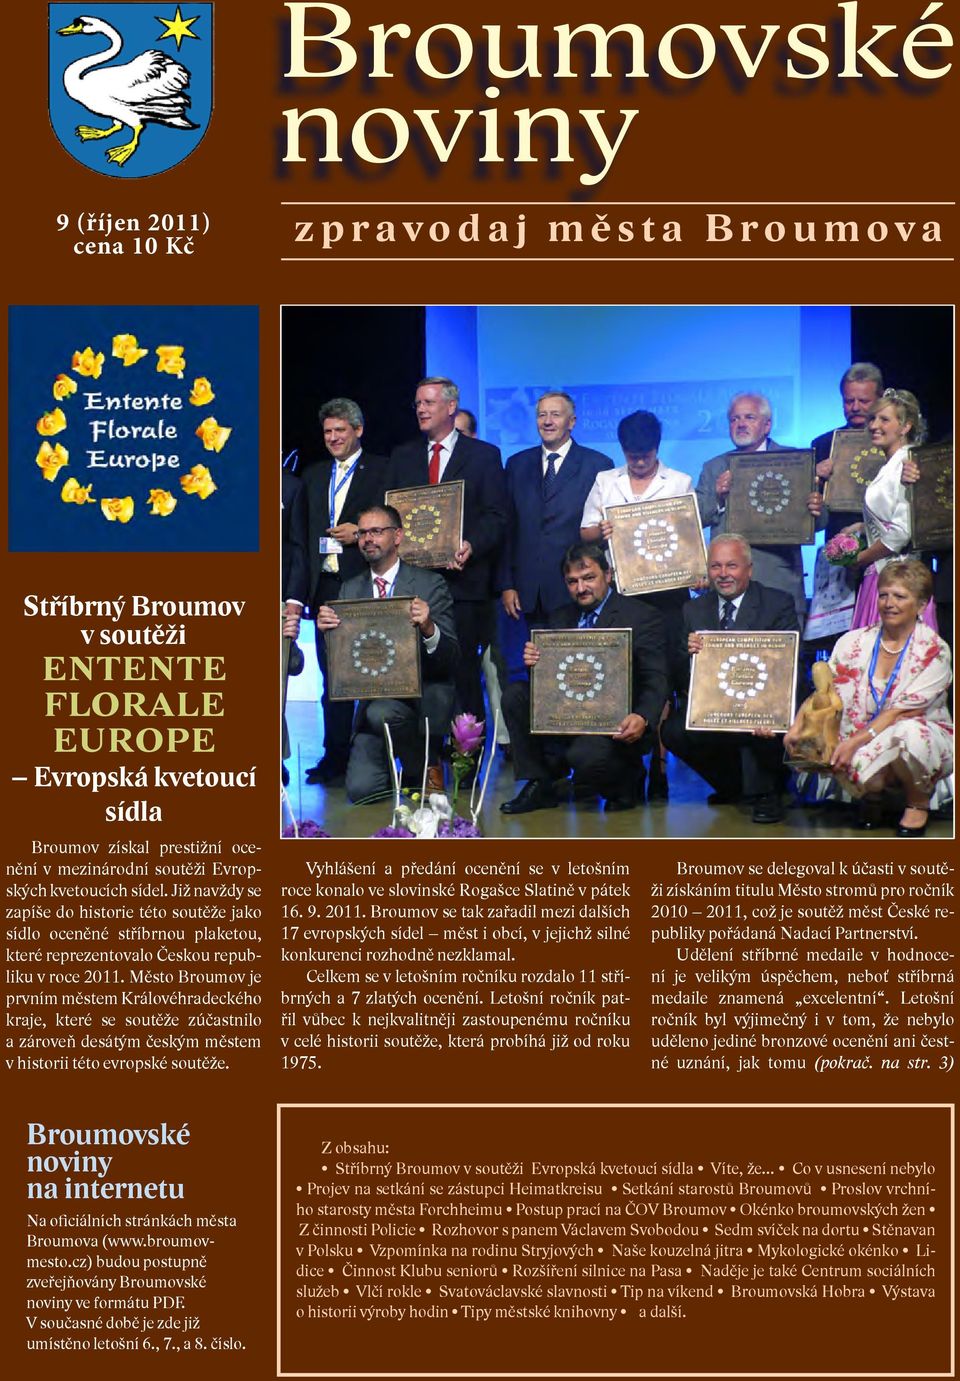 Město Broumov je prvním městem Královéhradeckého kraje, které se soutěže zúčastnilo a zároveň desátým českým městem v historii této evropské soutěže.